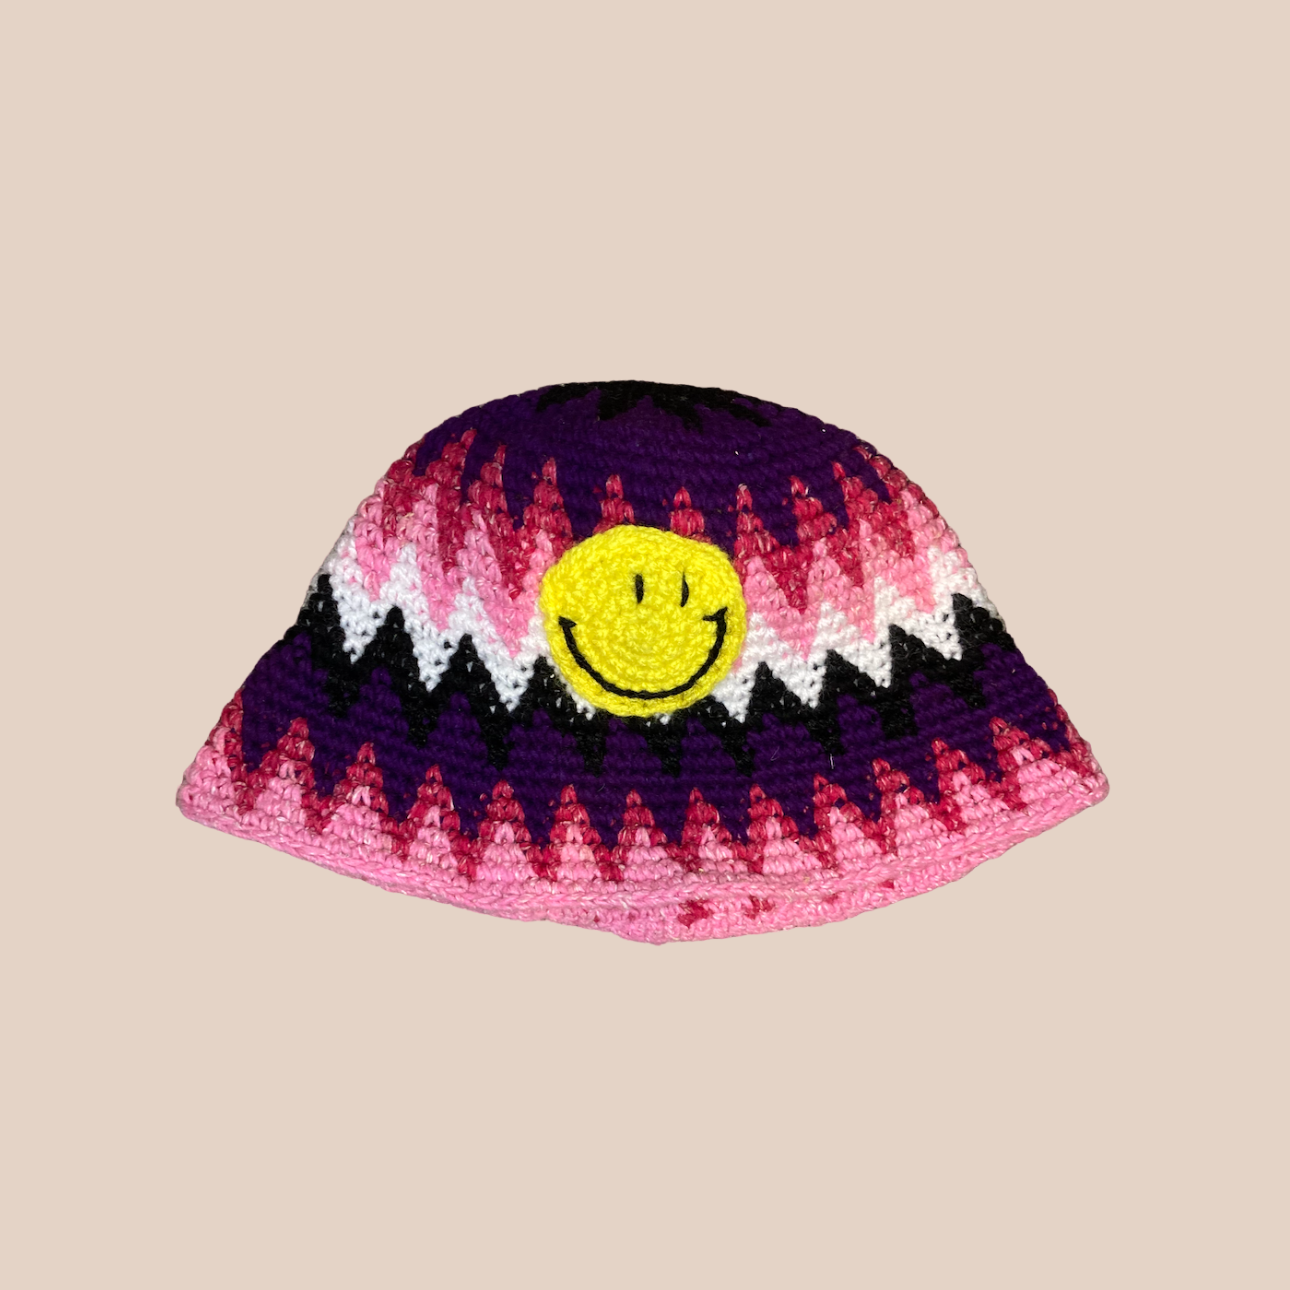 Image du bucket hat motifs smiley de Maison Badigo, bucket hat (bob) multicolore unique et tendance